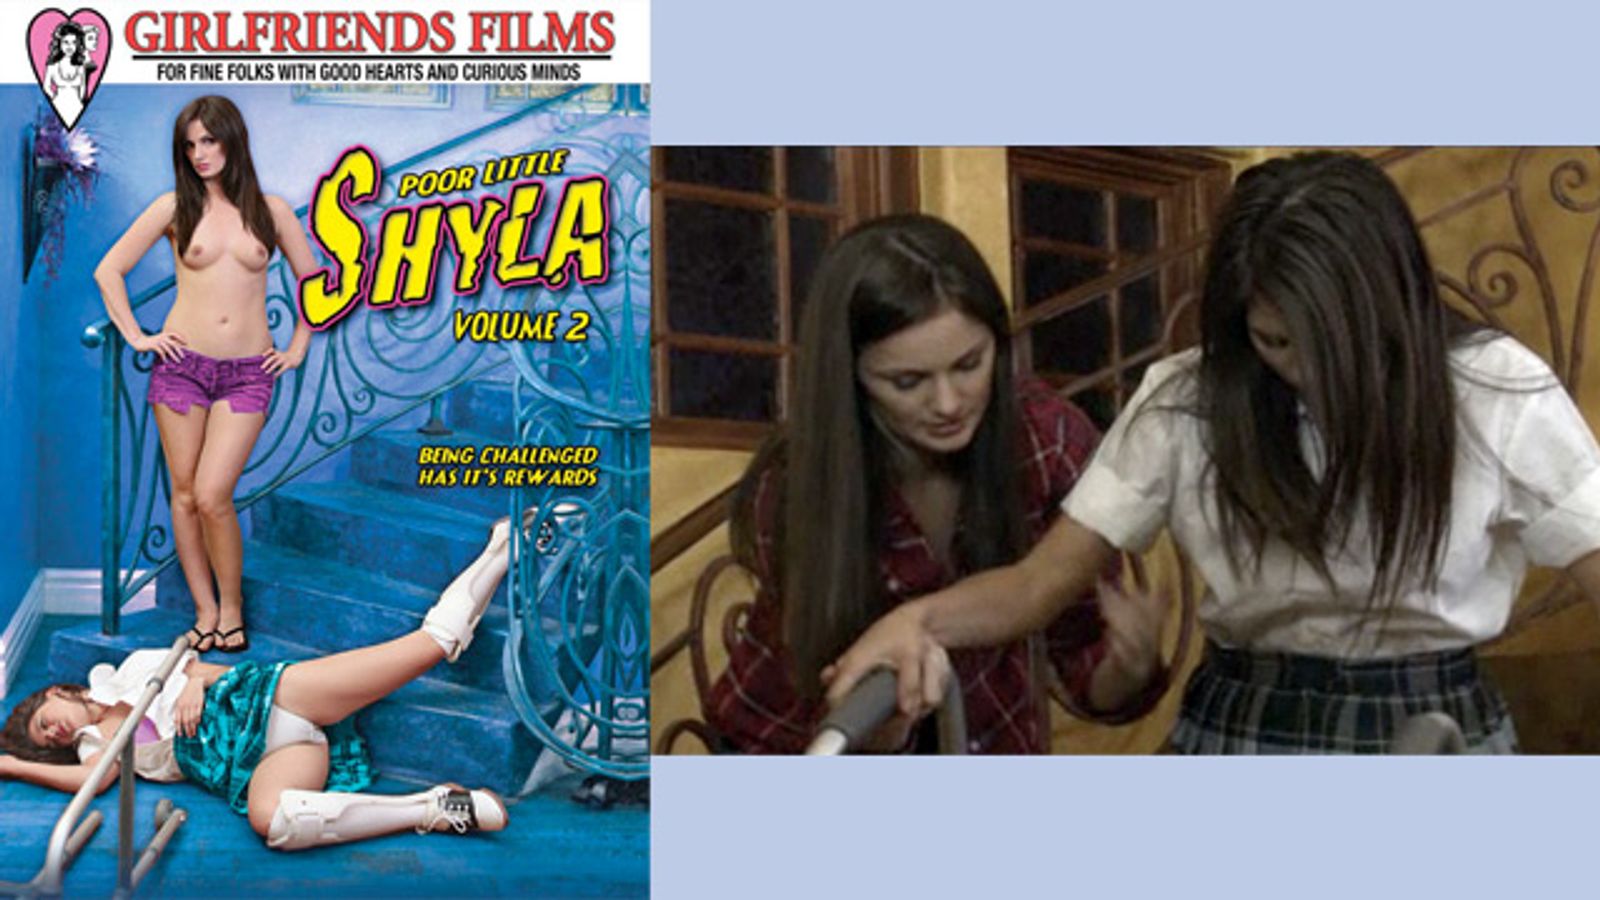 Poor Little Shyla 2' At Last on DVD From Girlfriends Films | AVN